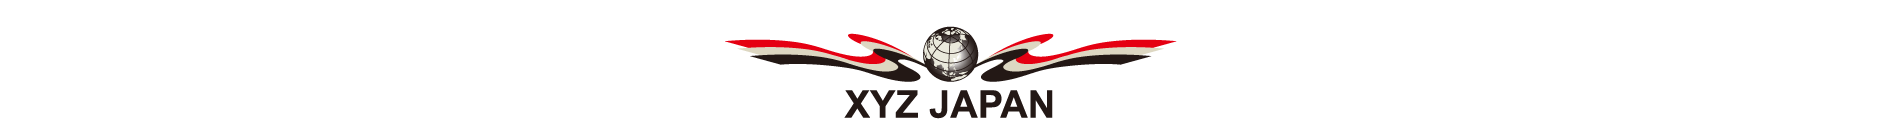 XYZ JAPAN - 車高調